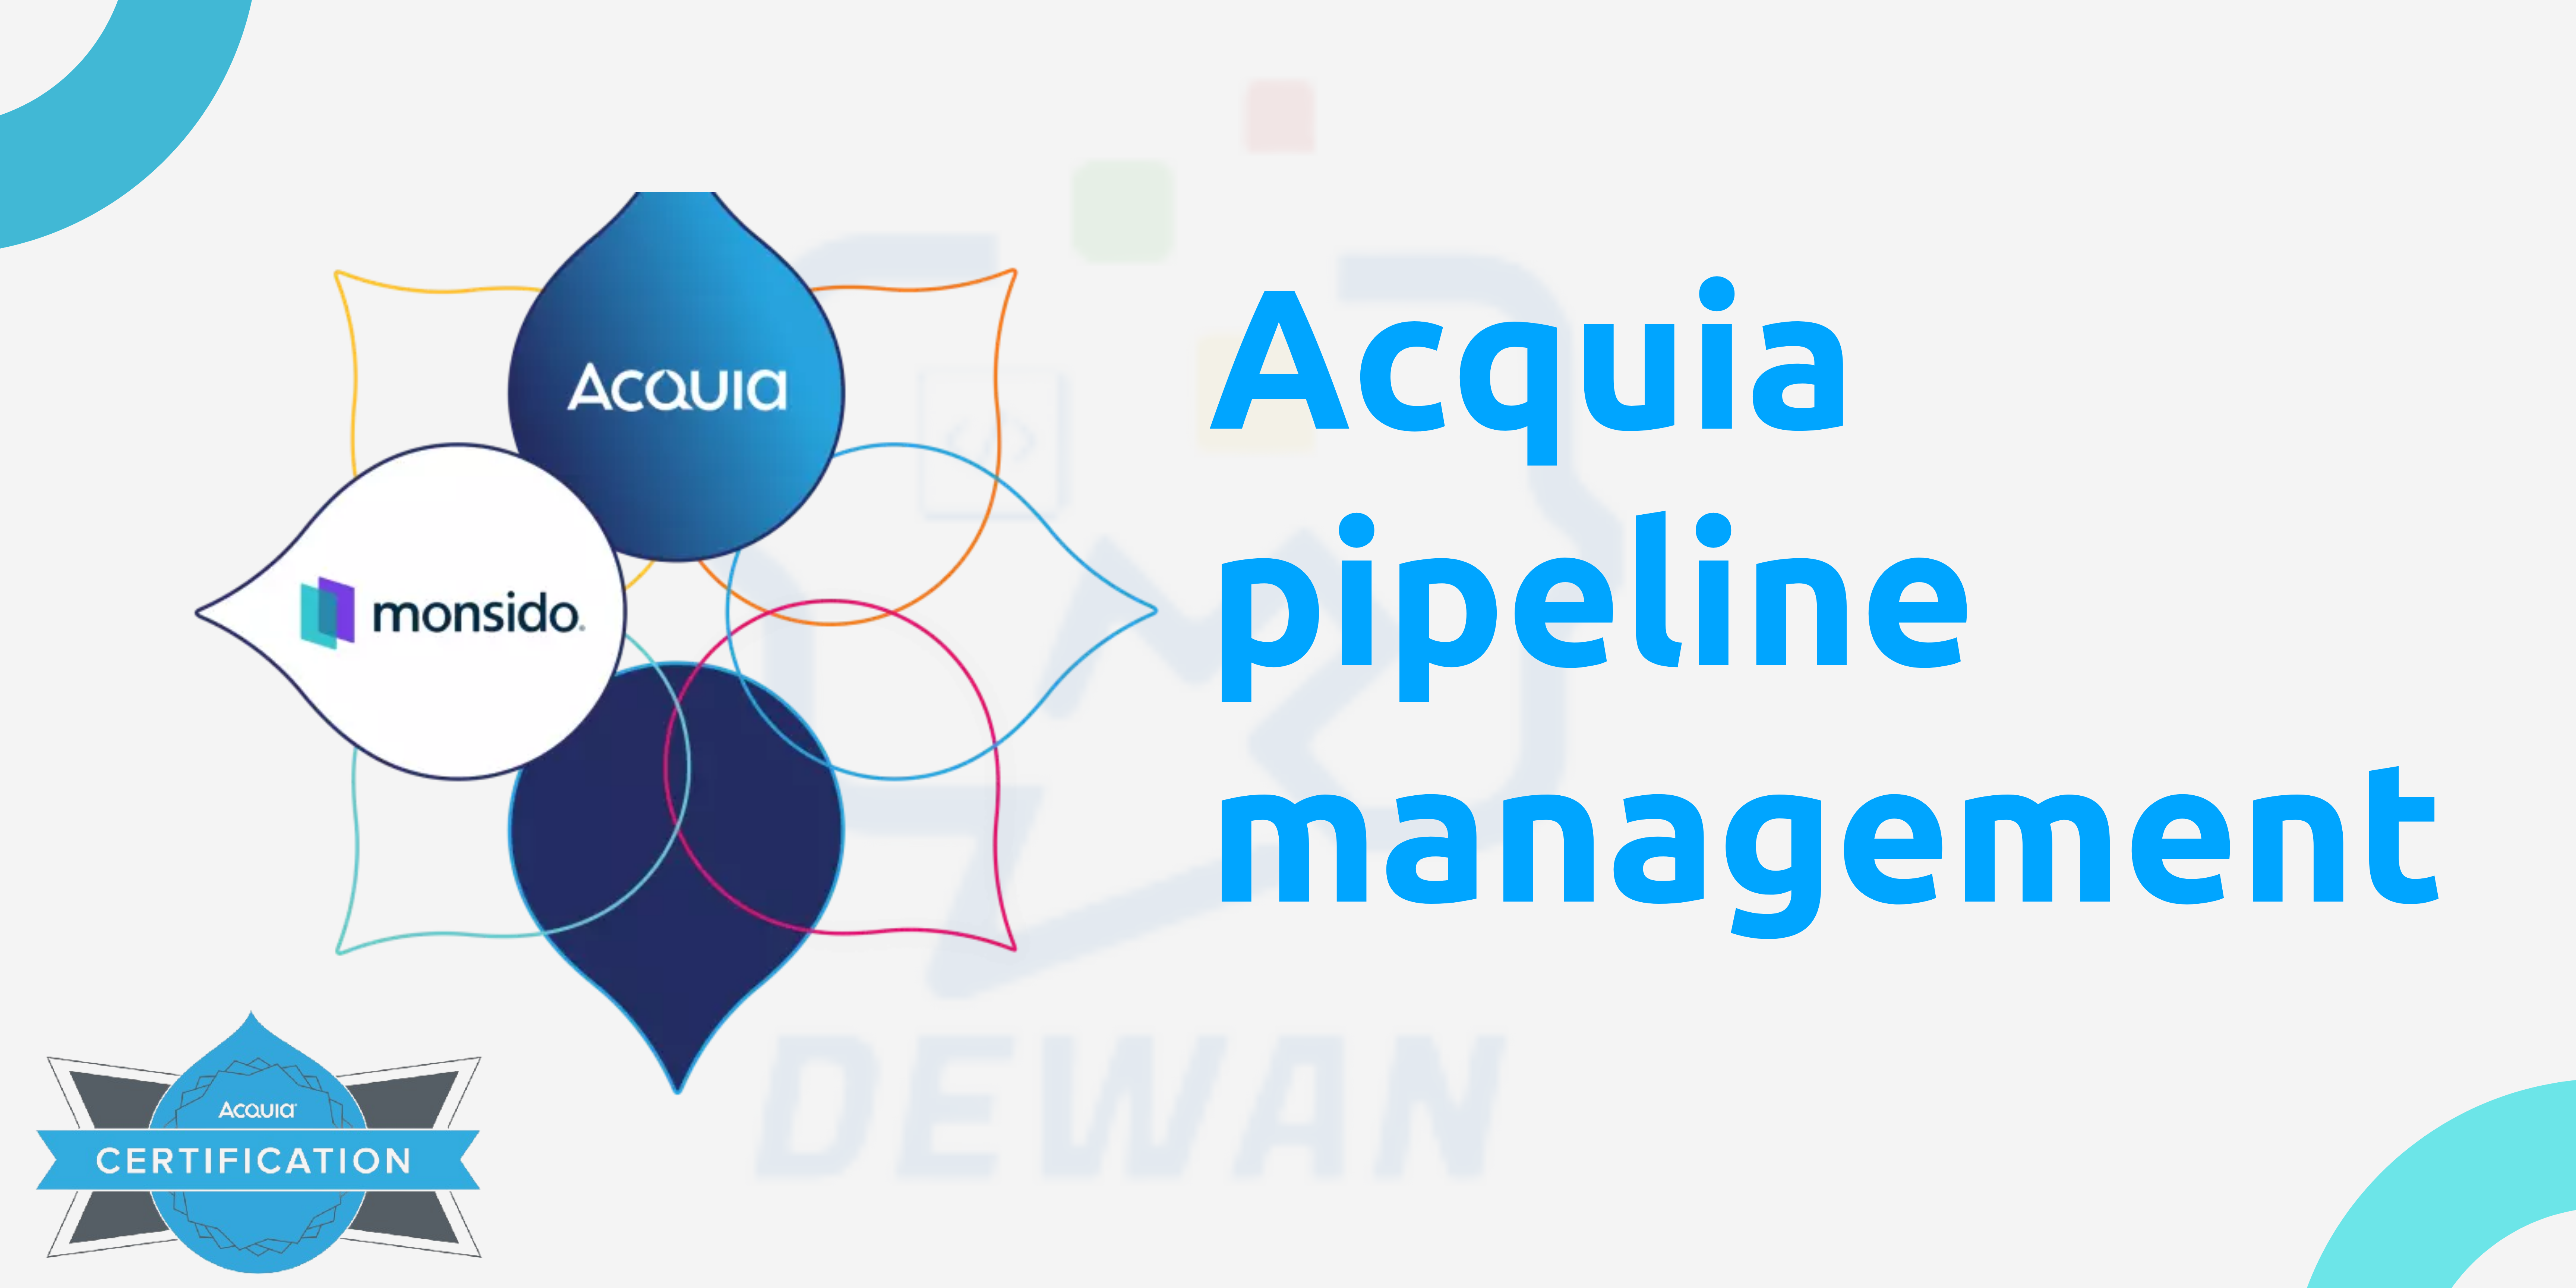 Acquia Pipeline Management